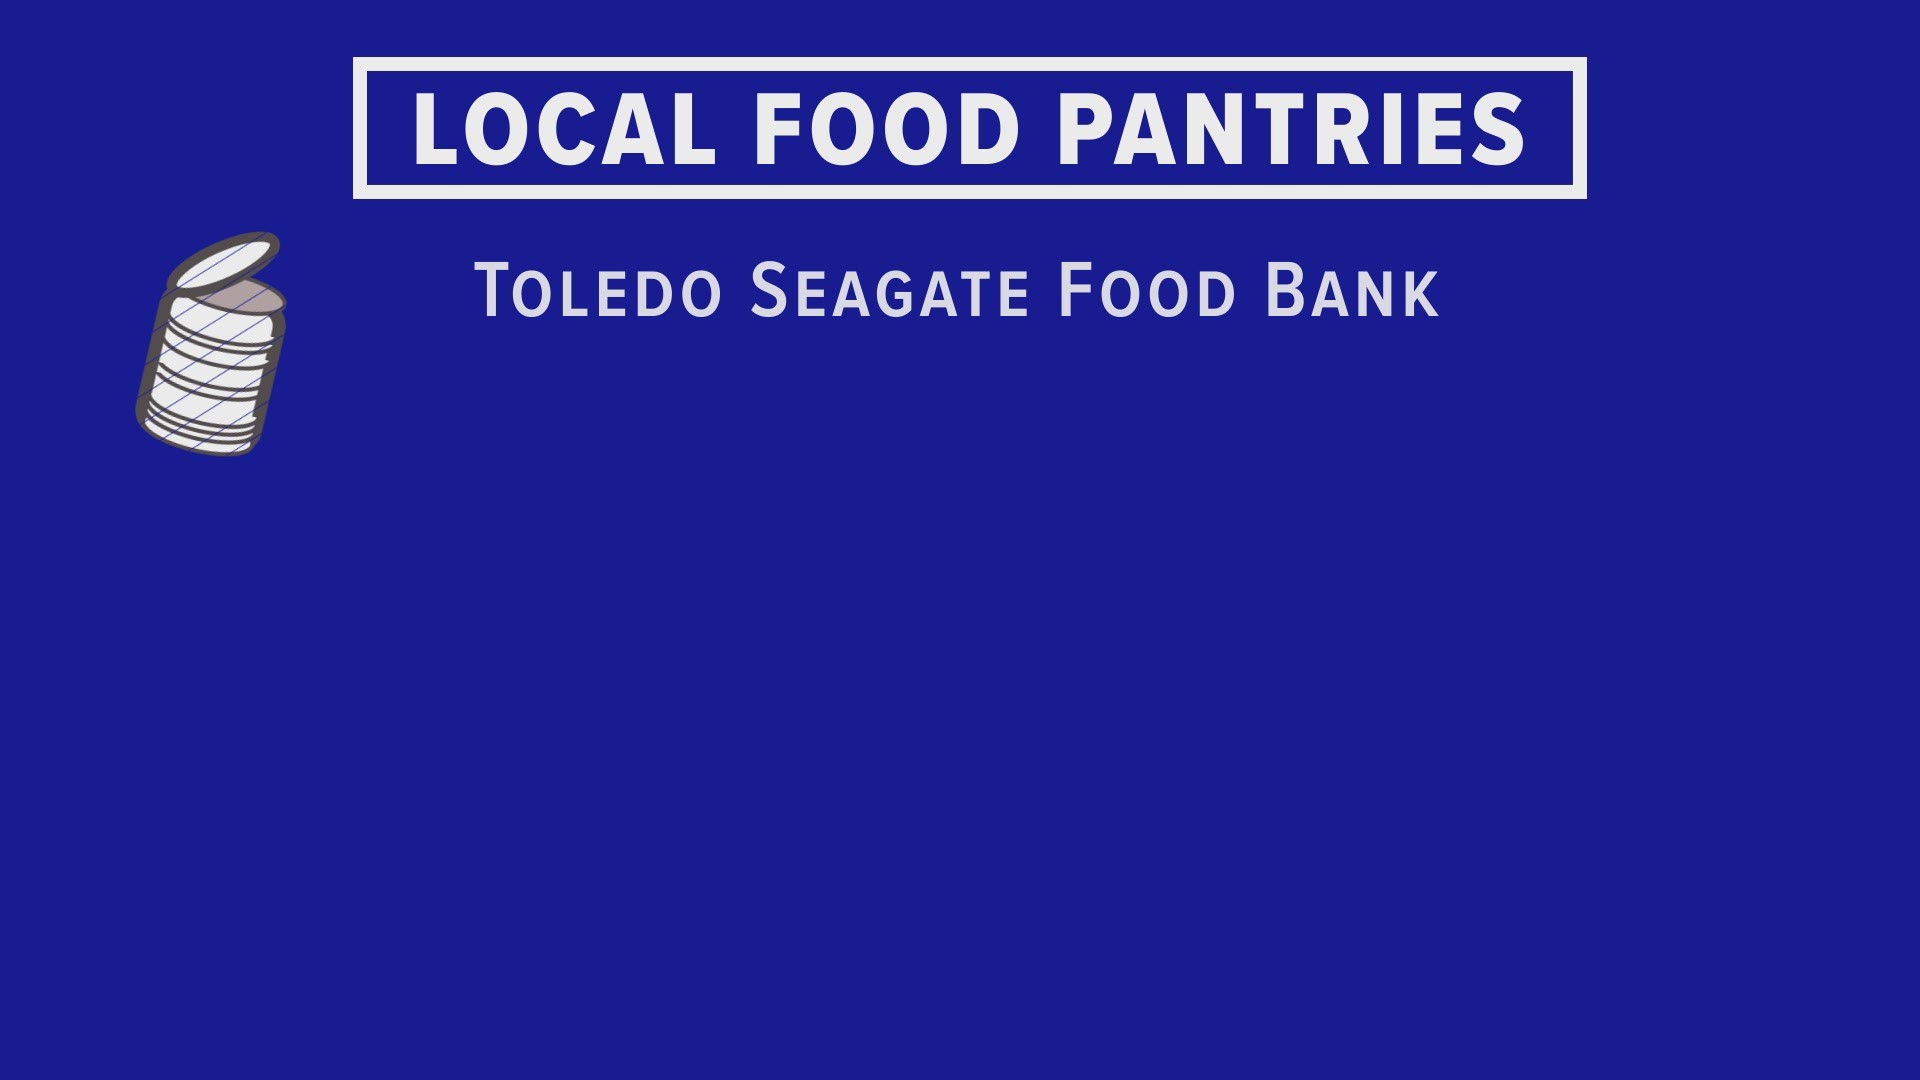 Toledo-area food pantries